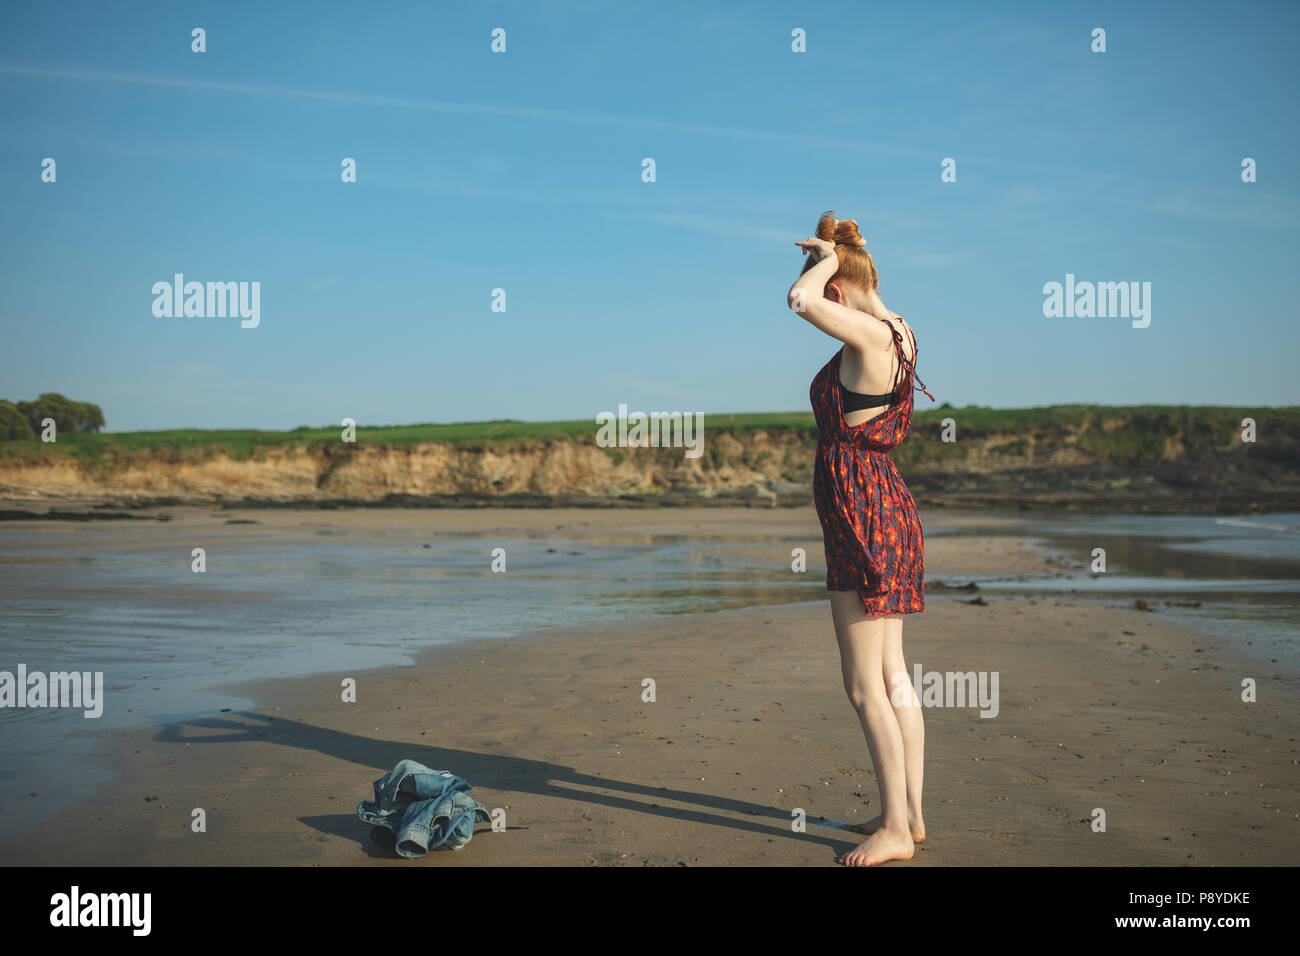 Femme jouant avec son ombre sur la plage Banque D'Images